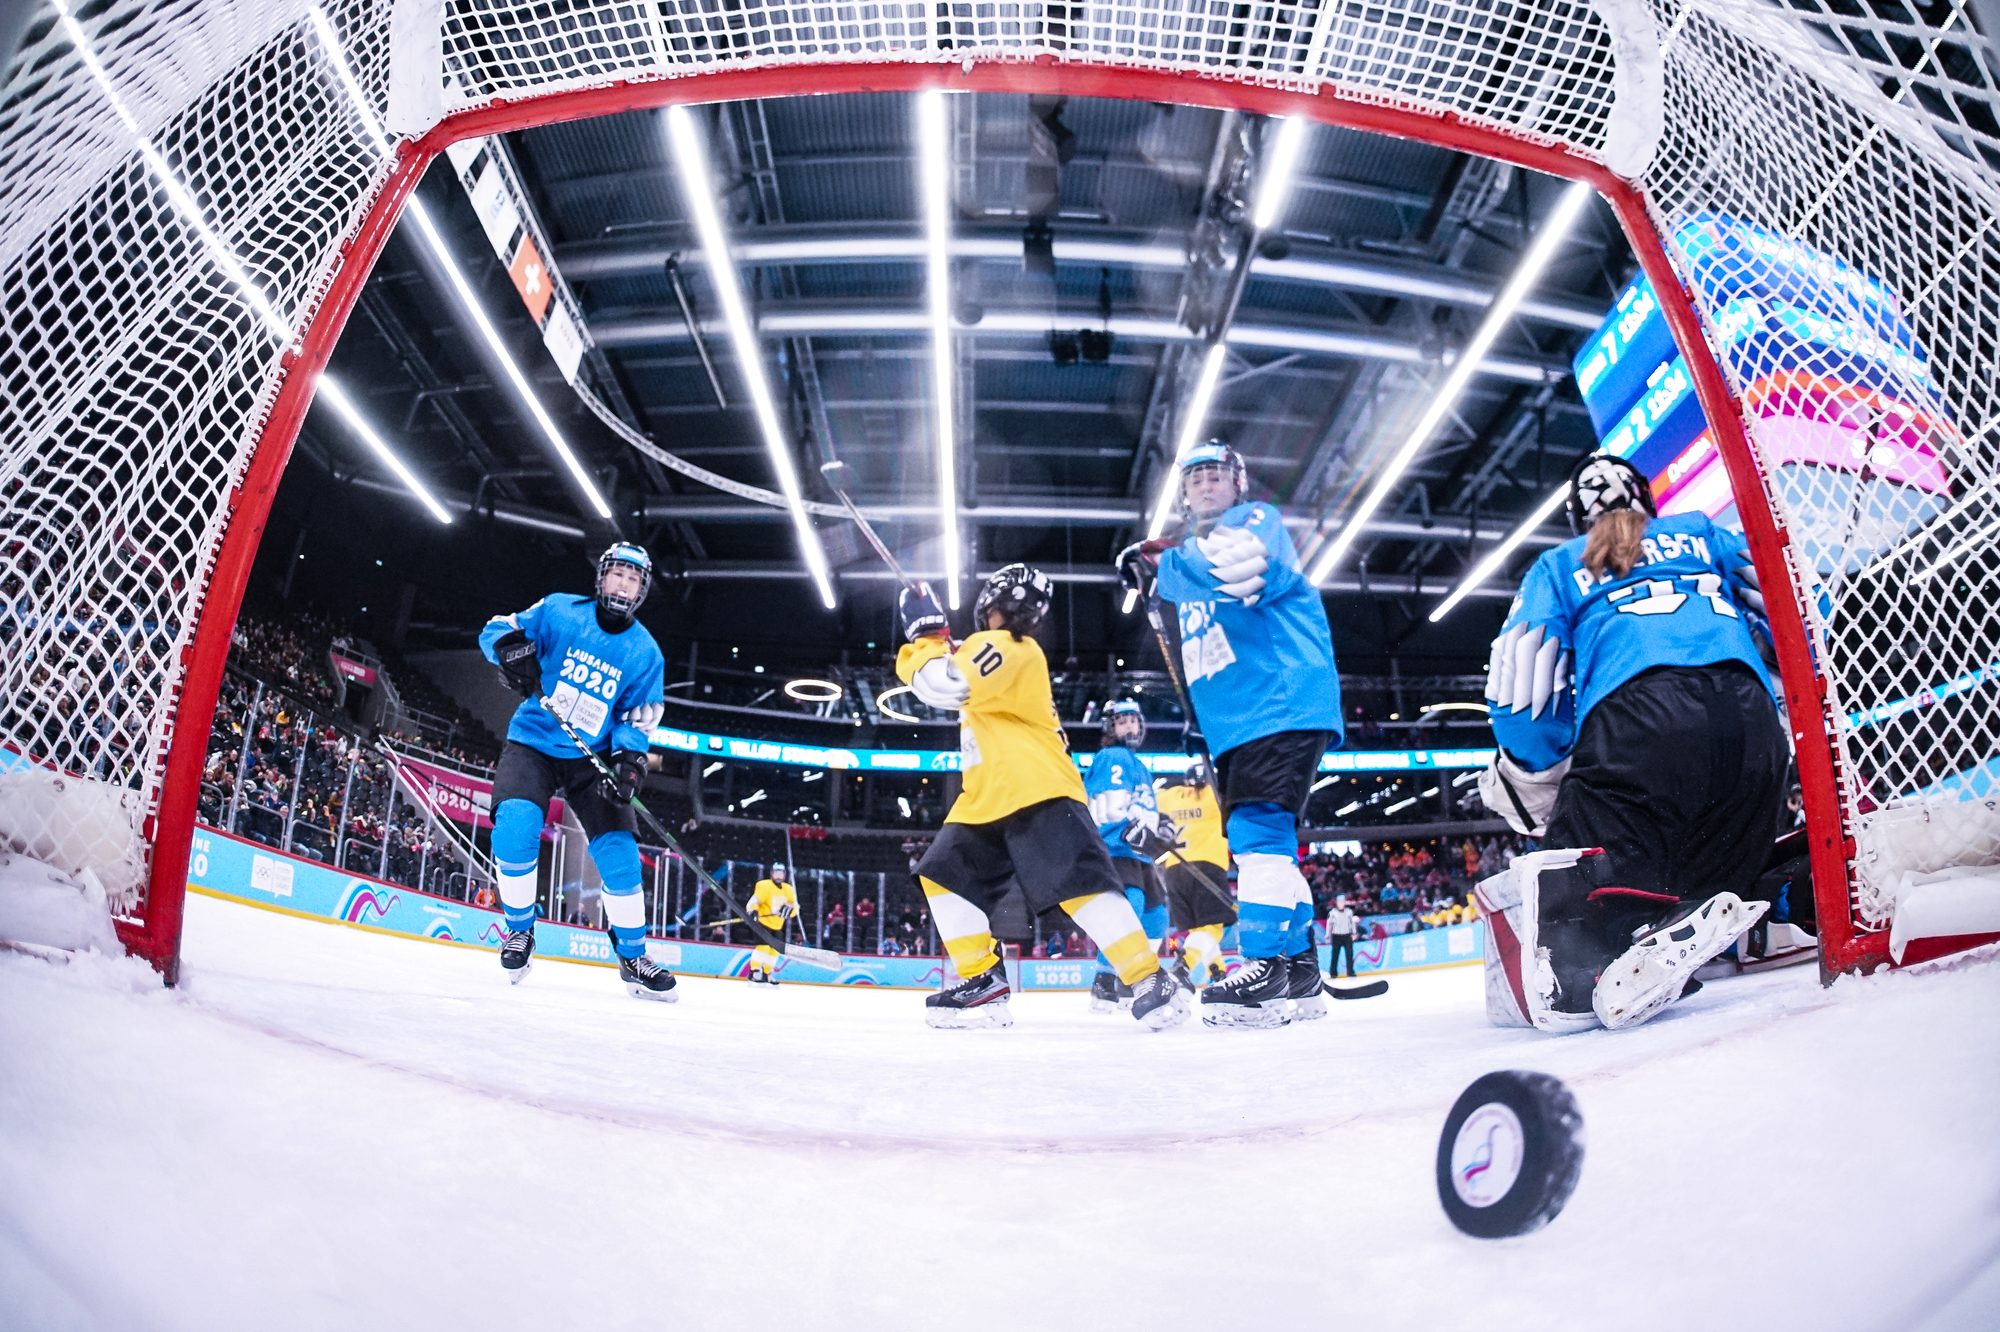 Hockey sur glace: La patinoire de Malley accueille un évènement unique ce week-end